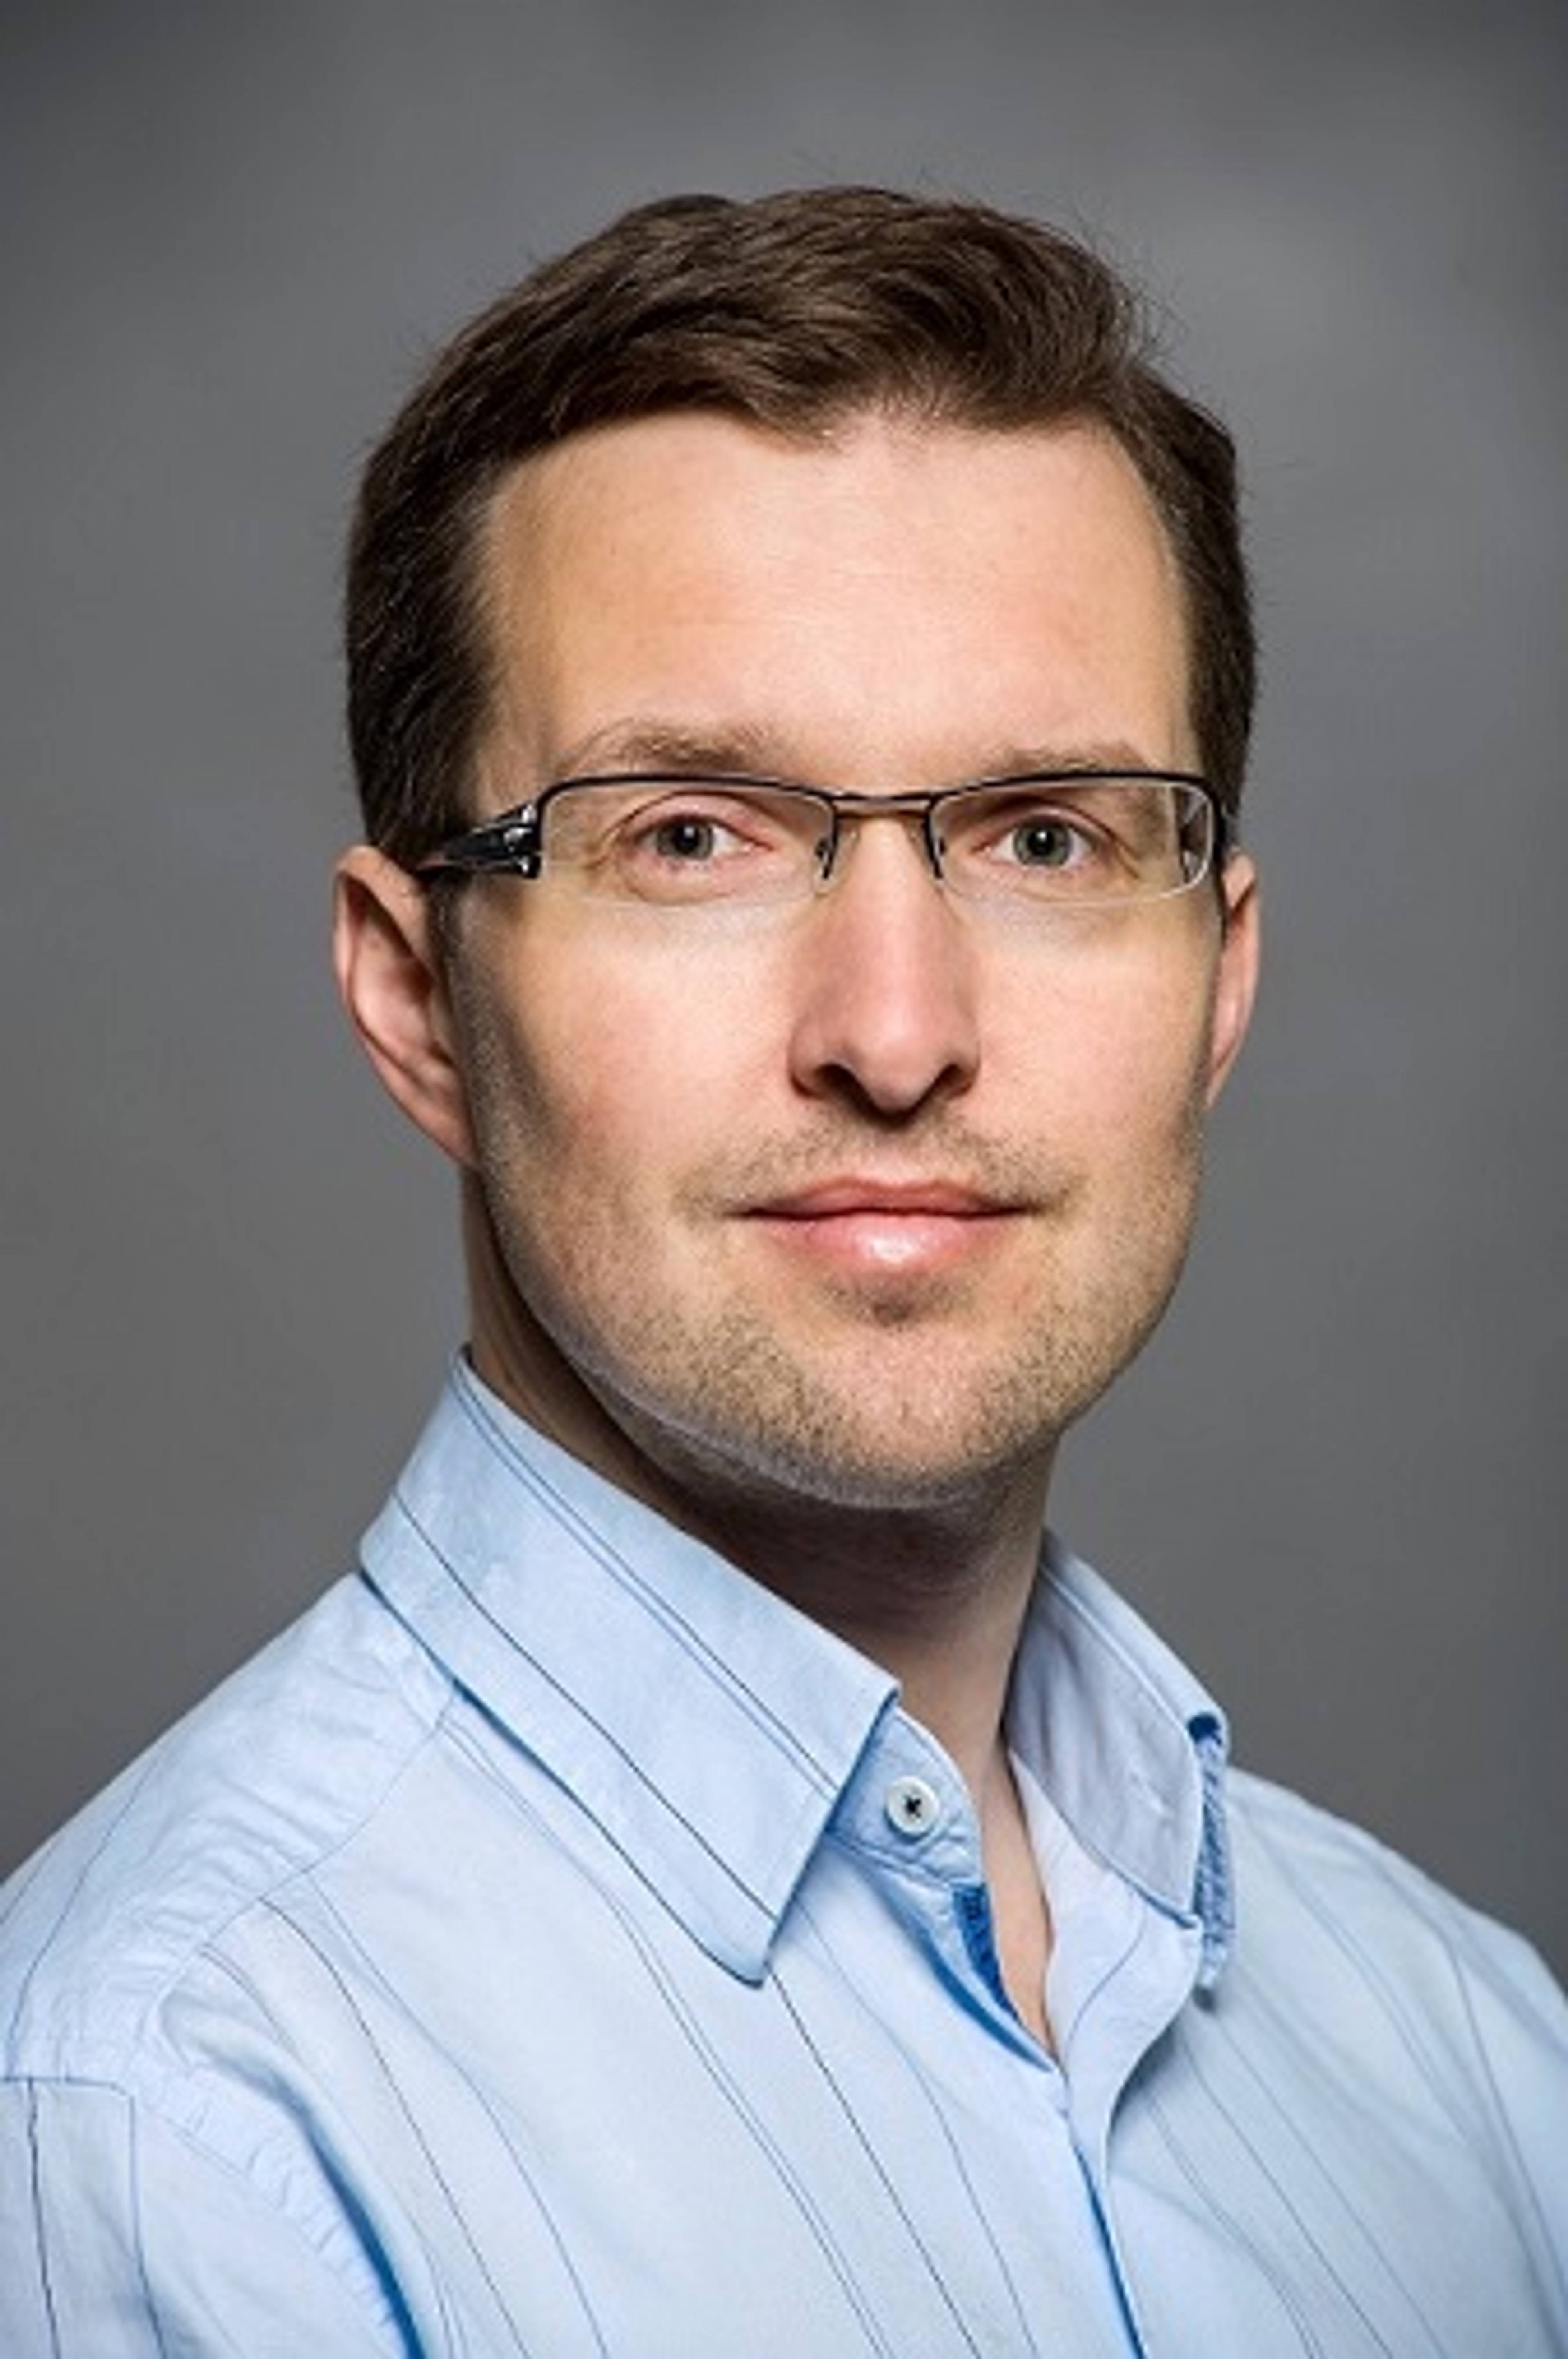  MUDr. Tomáš Zitko, vedoucí lékař Centra revmatologie ISCARE